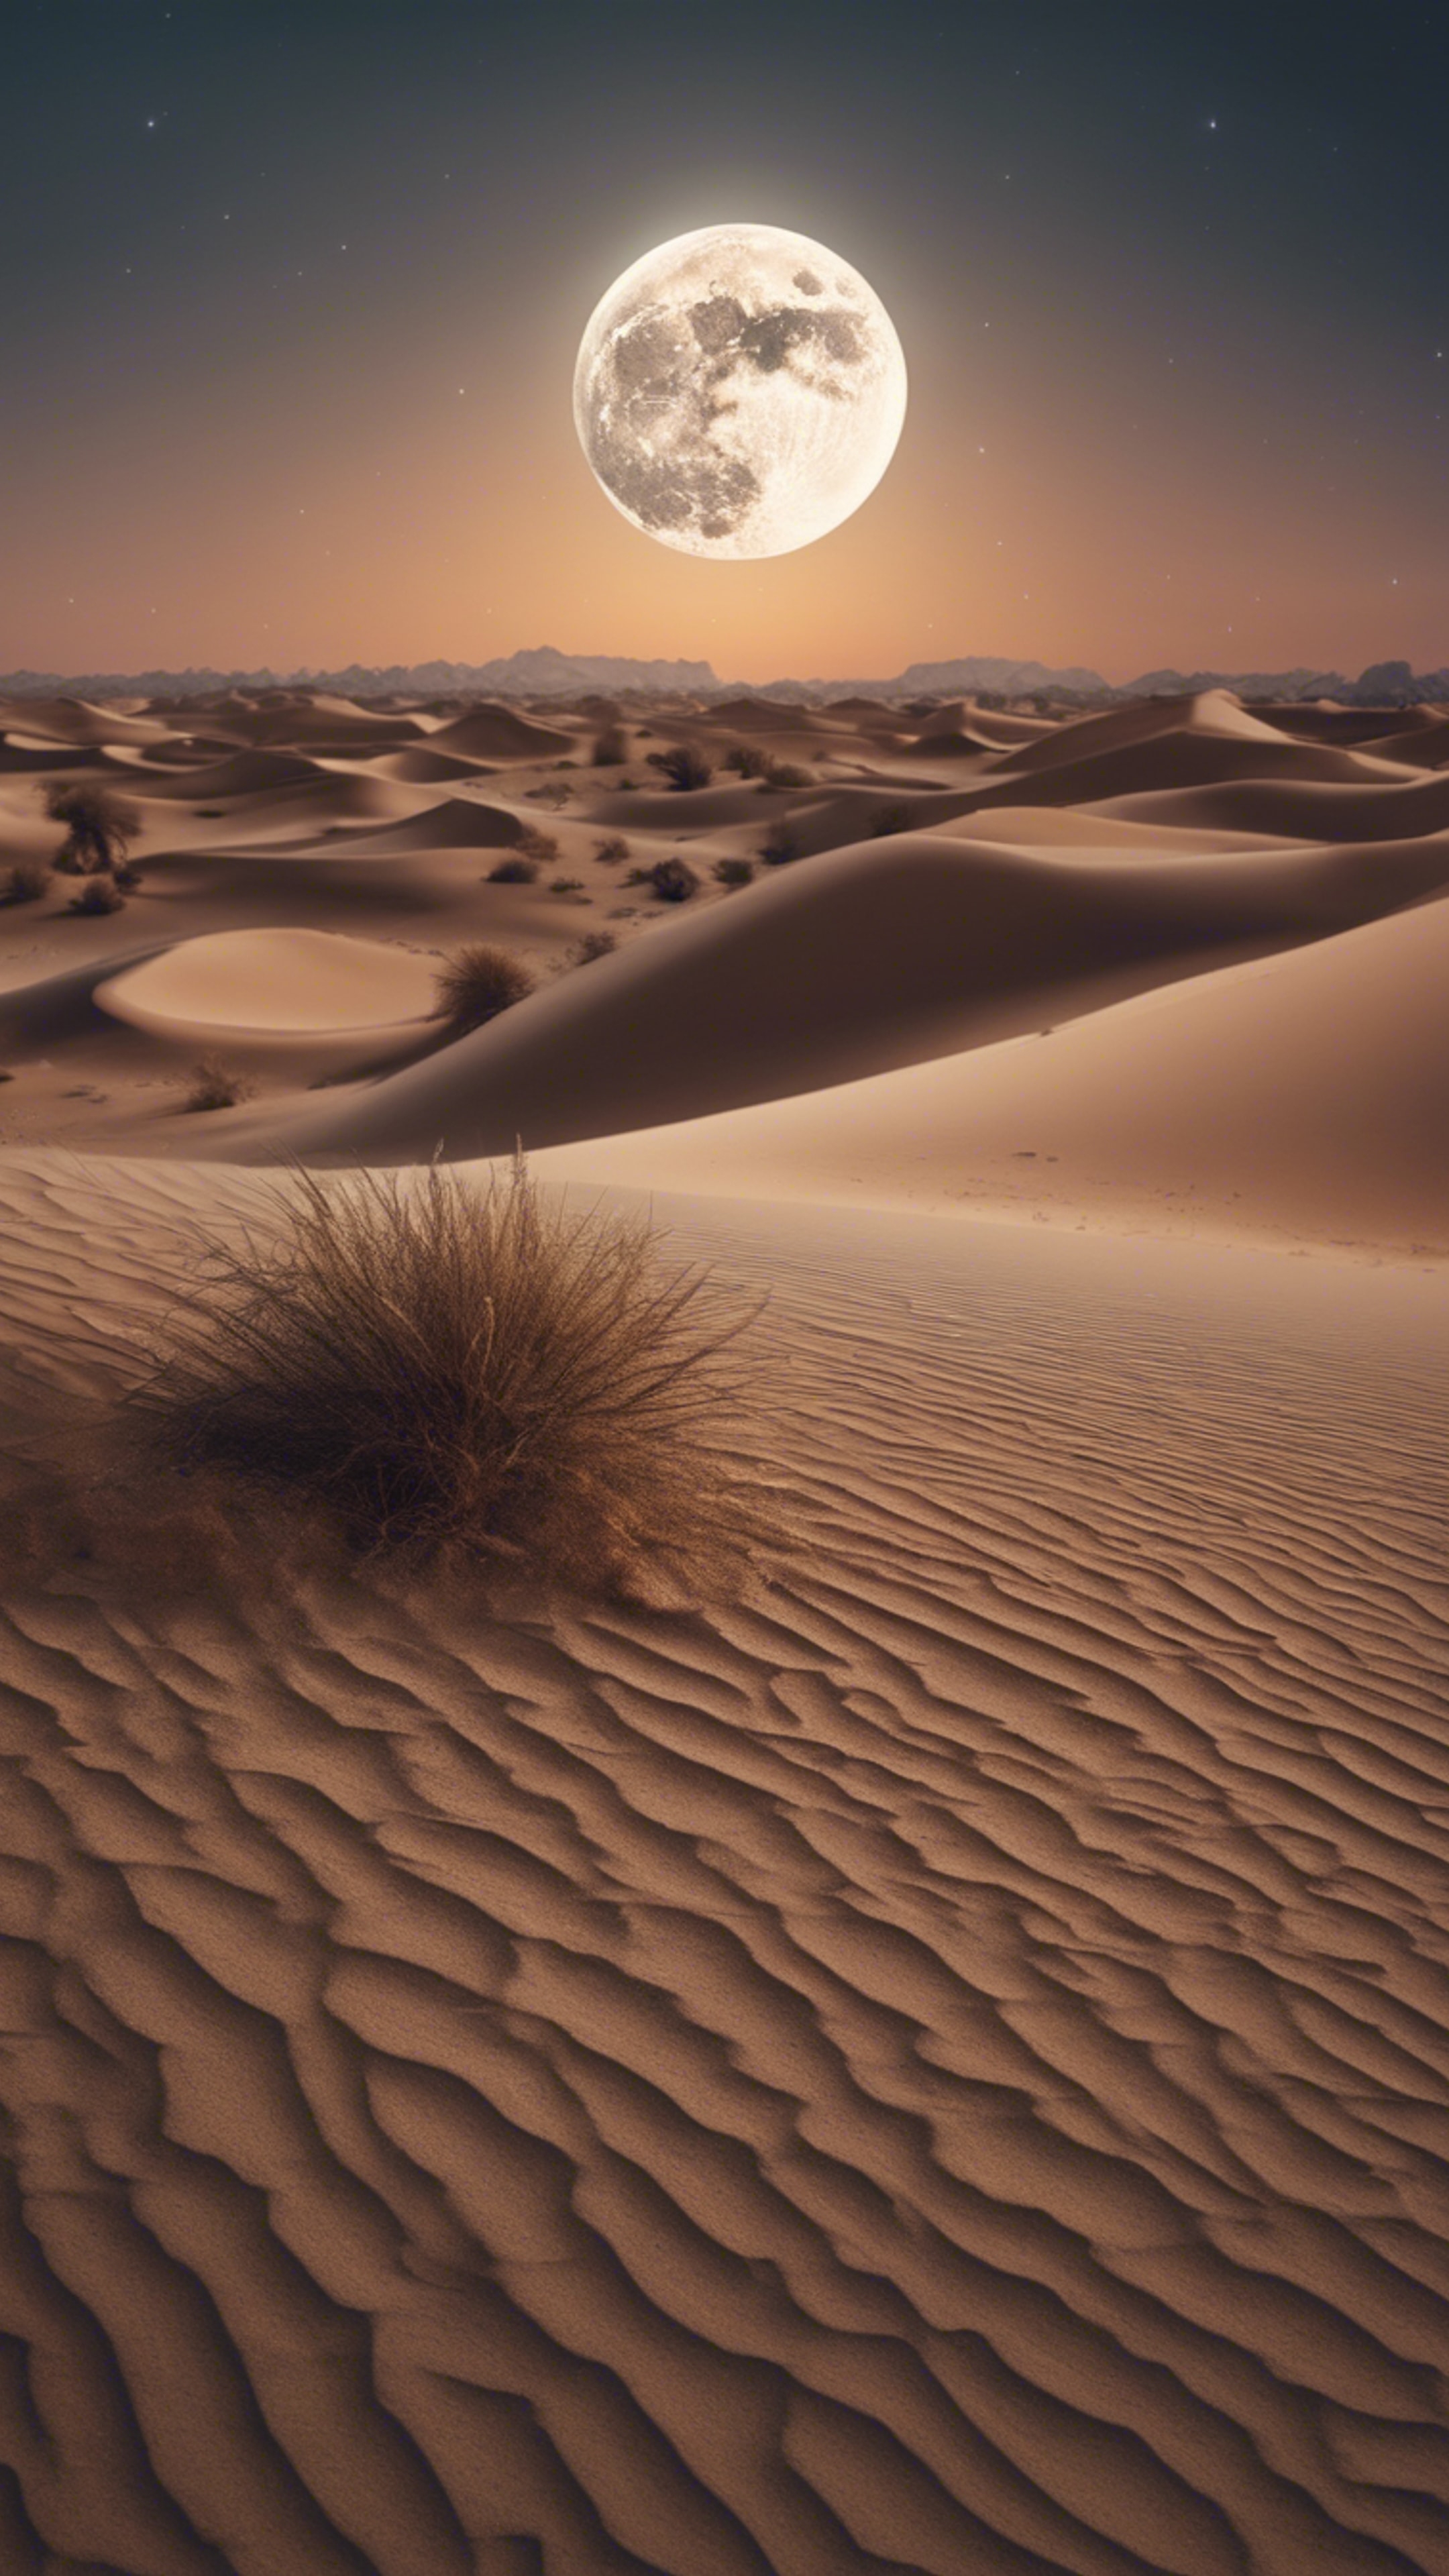 Beautiful image of desert terrain shot under the stunning light of a full moon. Wallpaper[12f6926b5d2b4ca6a1af]